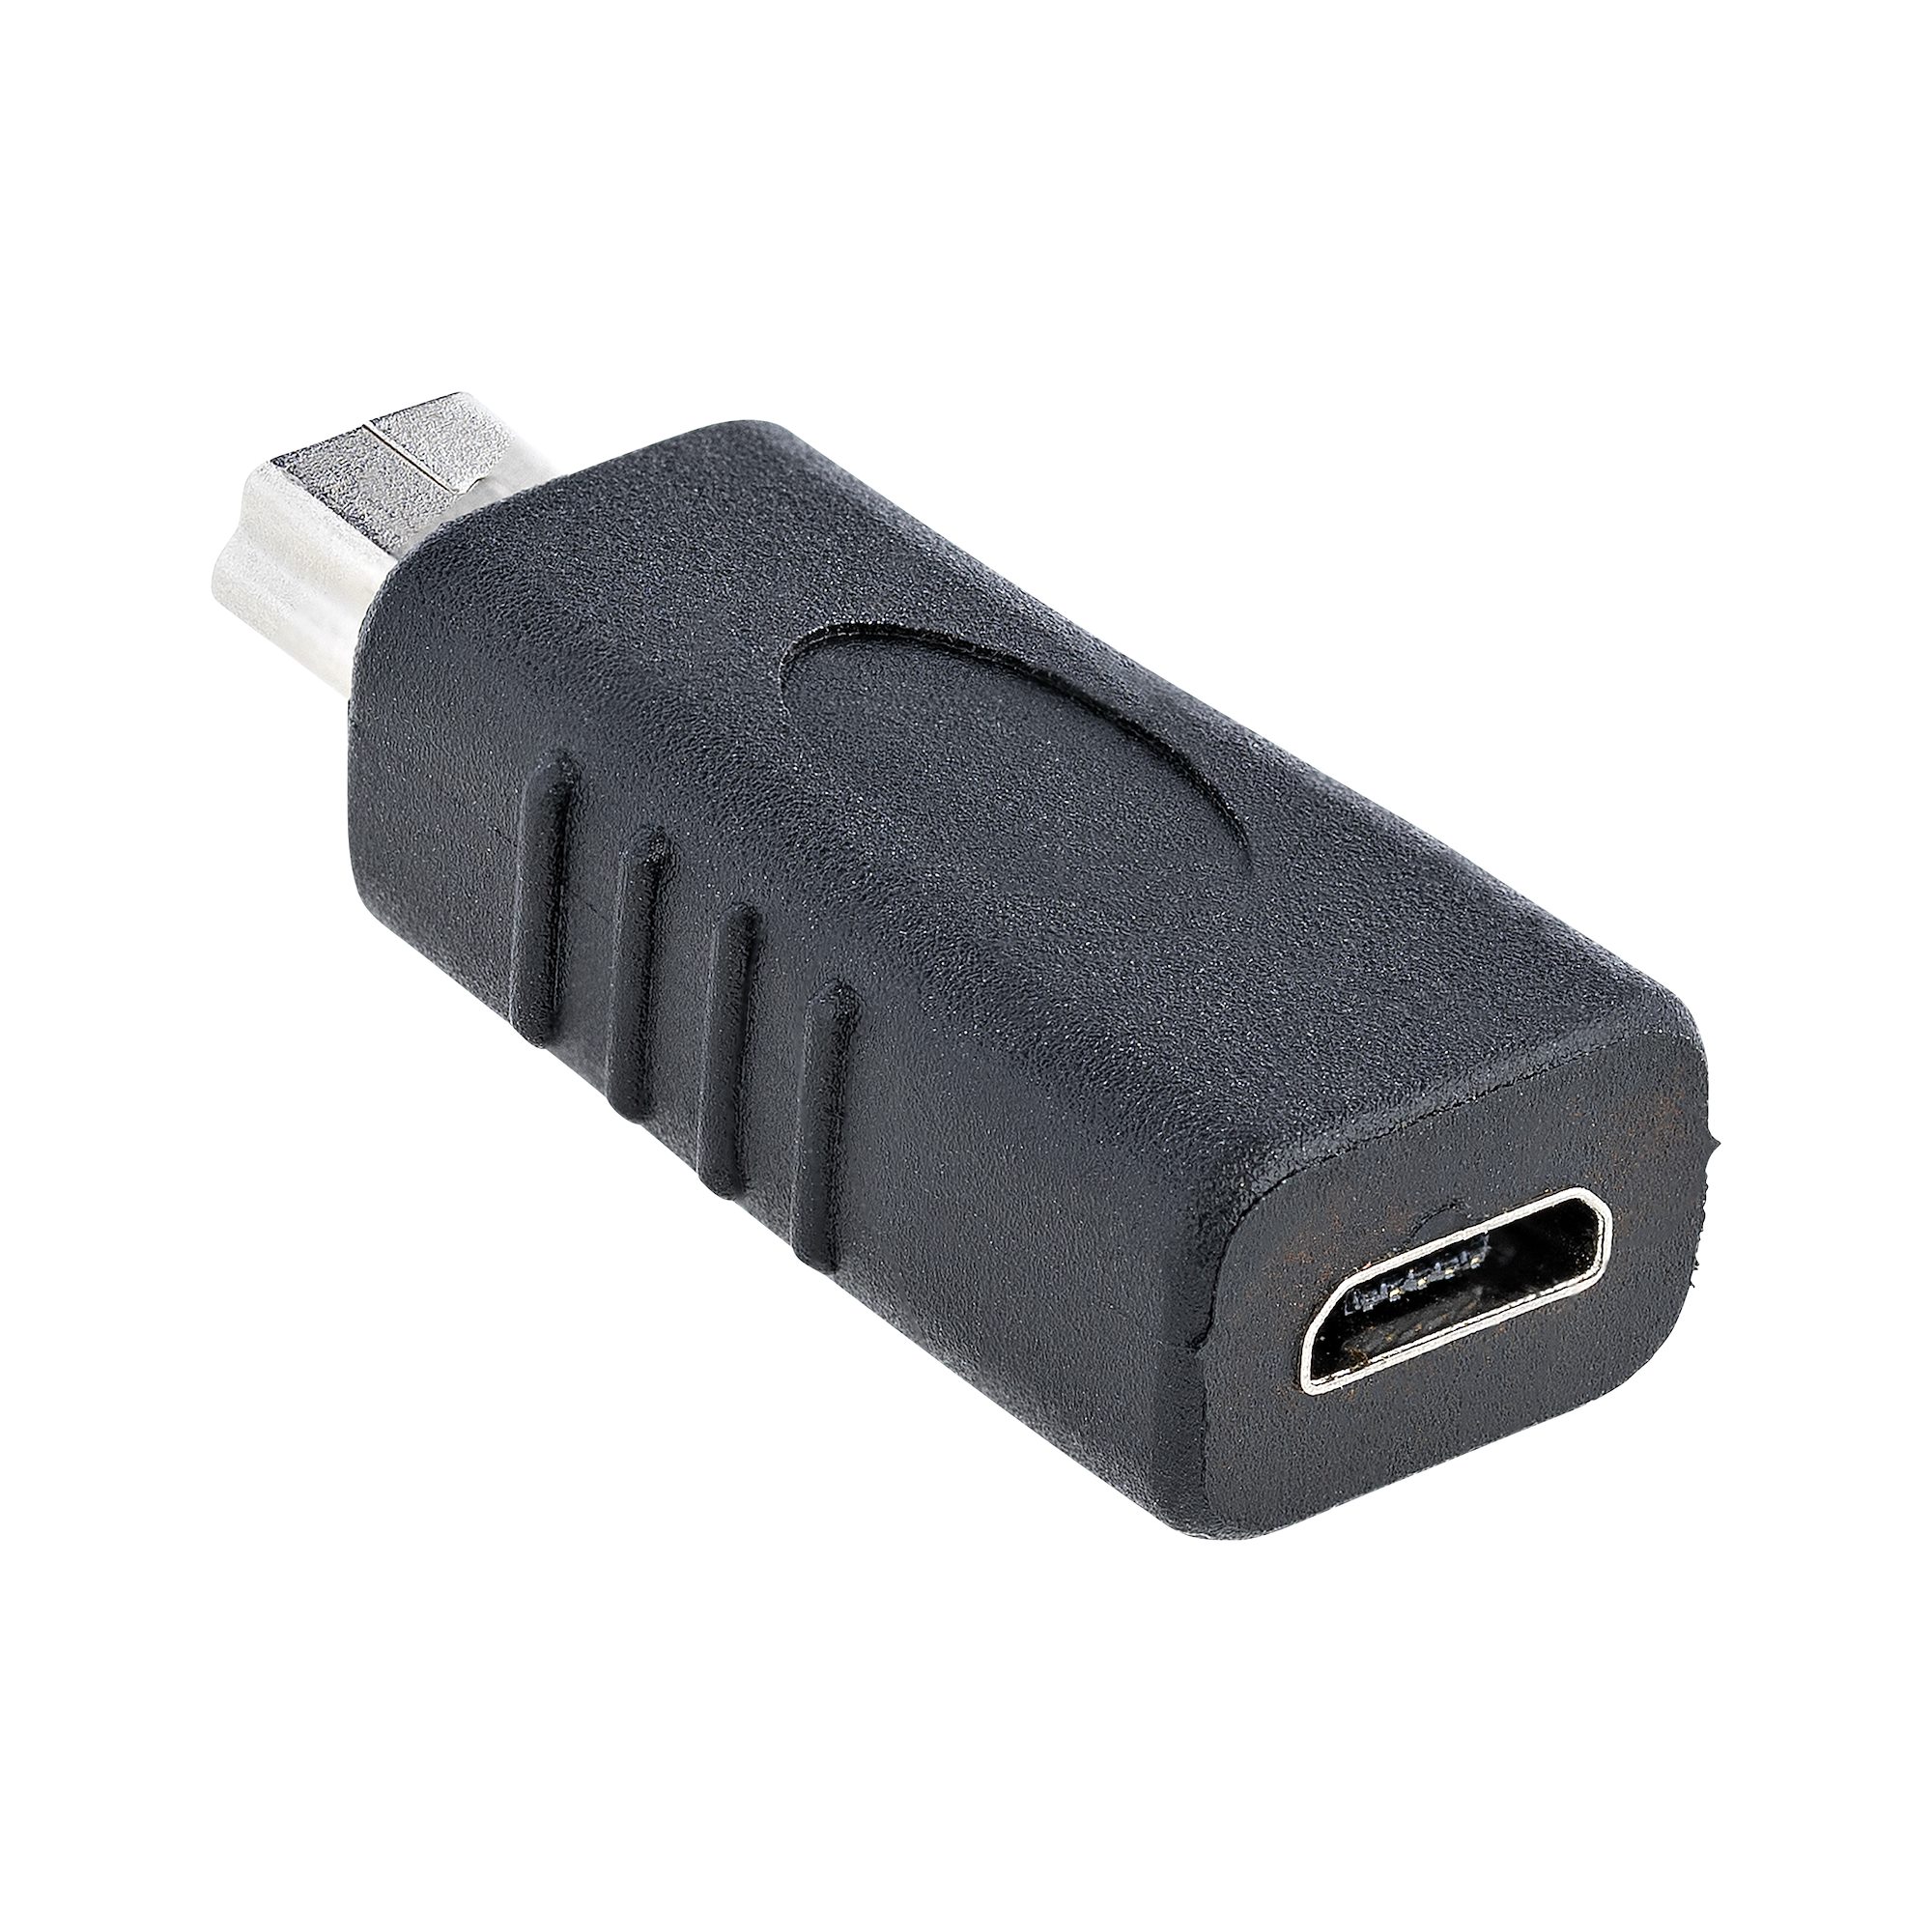 Mini USB B Hembra a Micro USB B Macho Negro USB 2.0 Tecnología de Alta Velocidad deleyCON MK703 Adaptador Mini a Micro USB 